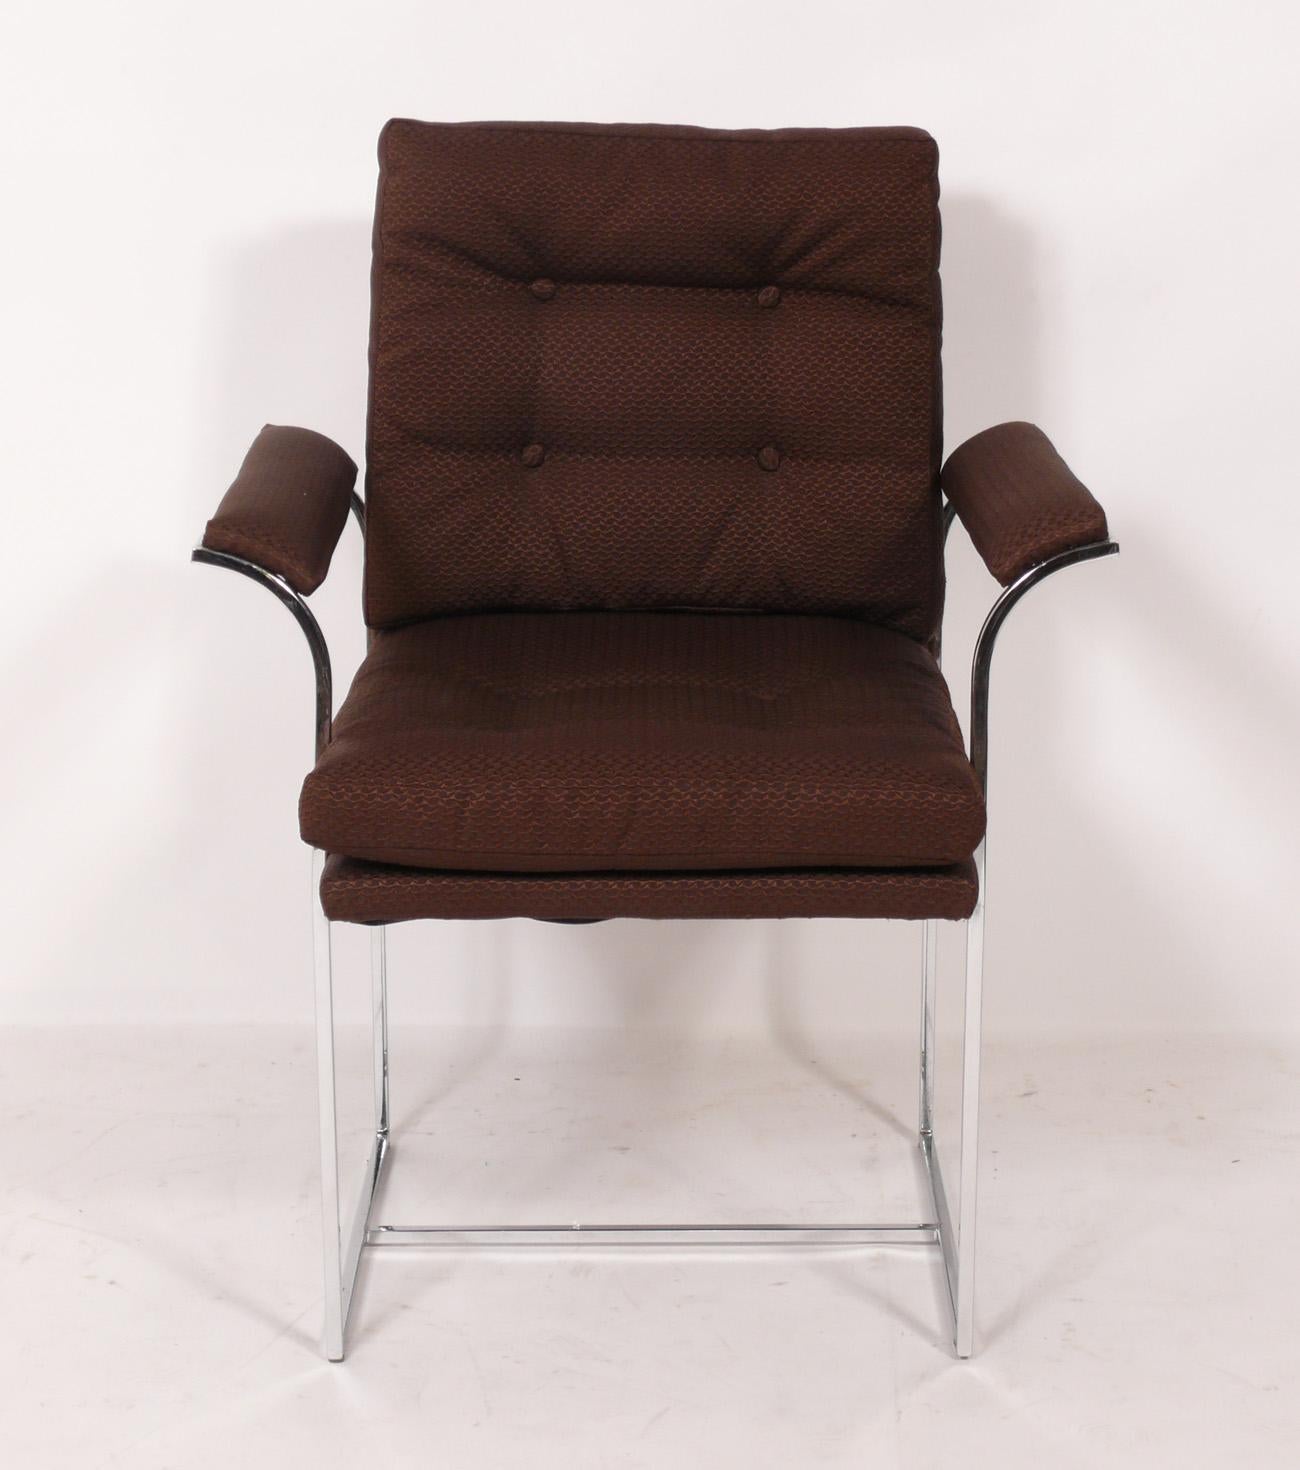 Ensemble de six chaises de salle à manger chromées du milieu du siècle dans le style de Milo Baughman, américain, vers les années 1960. Ces chaises sont actuellement en cours de retapissage et peuvent être complétées avec votre tissu. Il suffit de